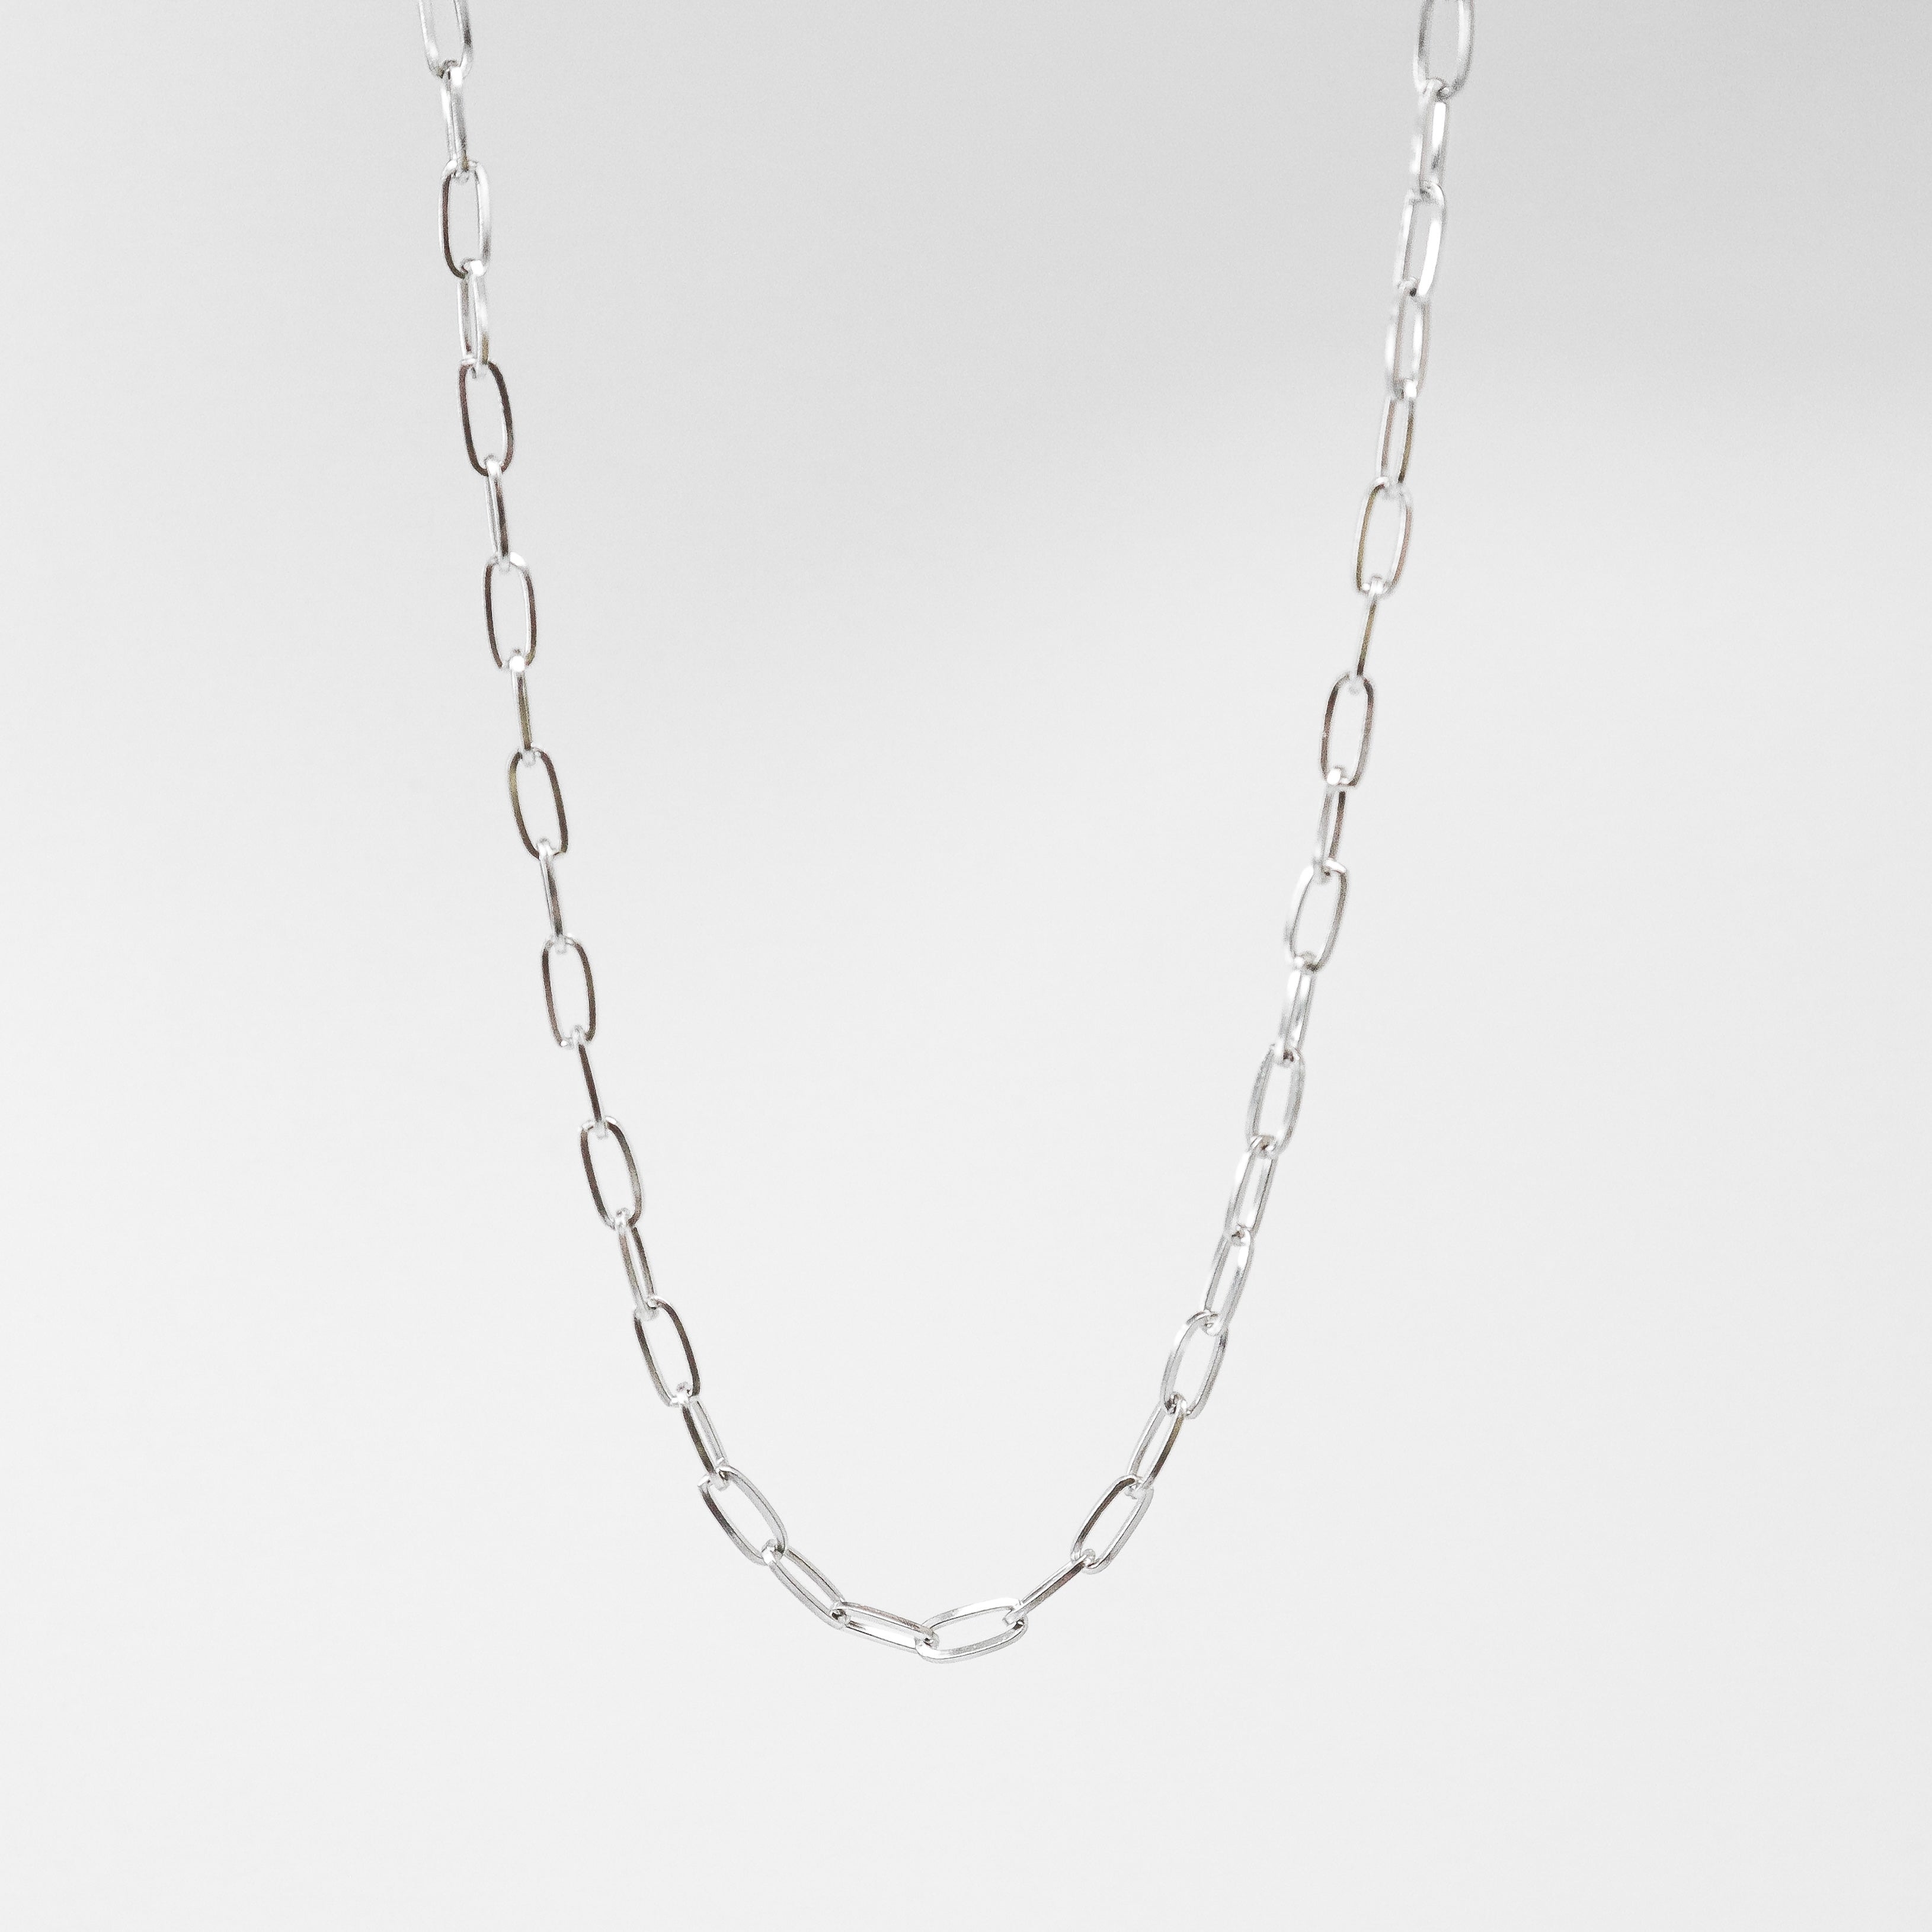 Delicate Silver Staple Chain Necklace